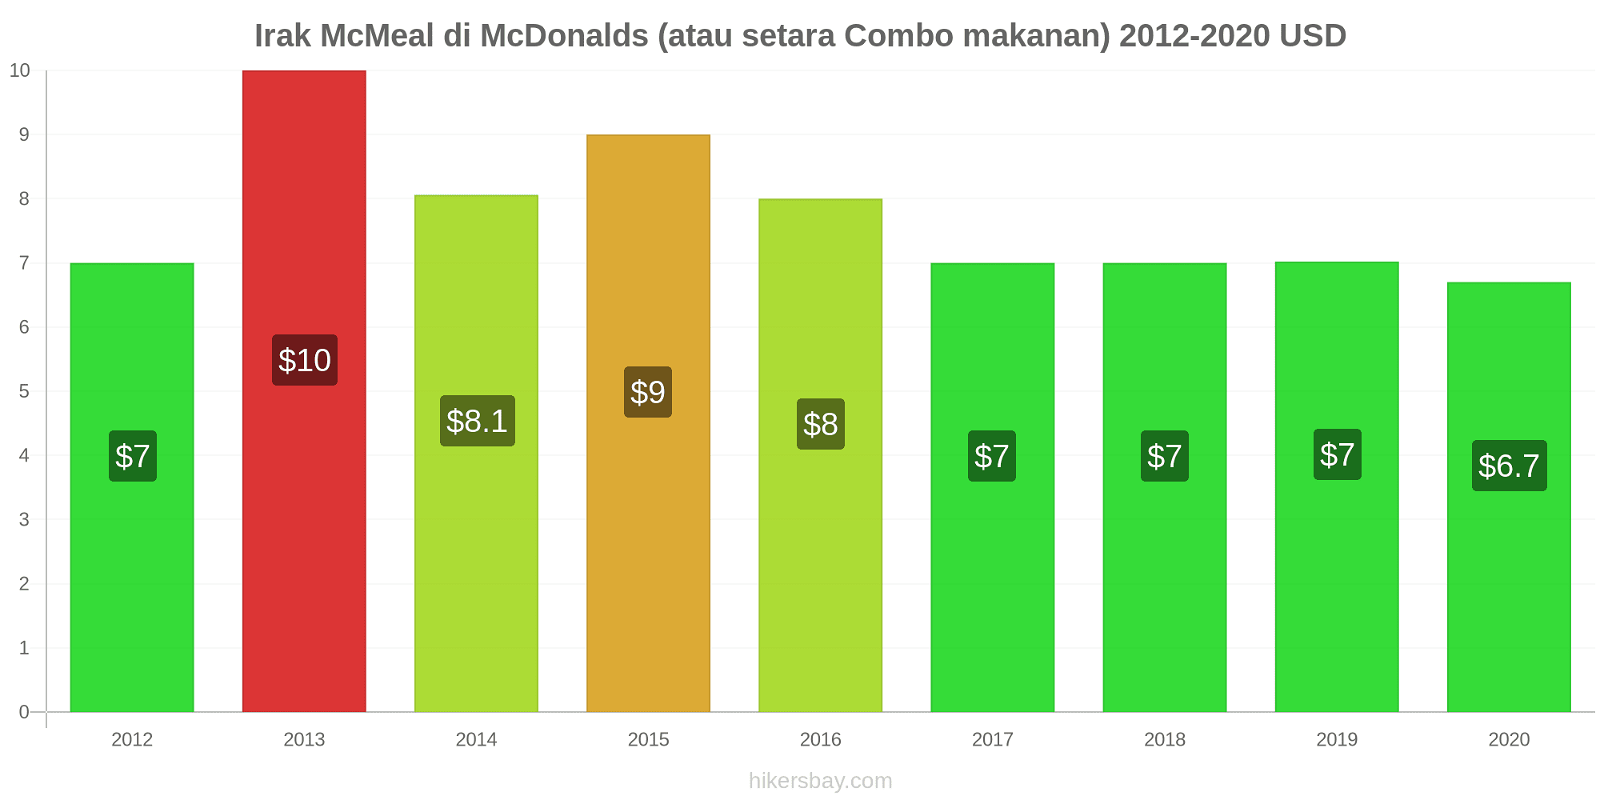 Irak perubahan harga McMeal di McDonalds (atau setara Combo makanan) hikersbay.com